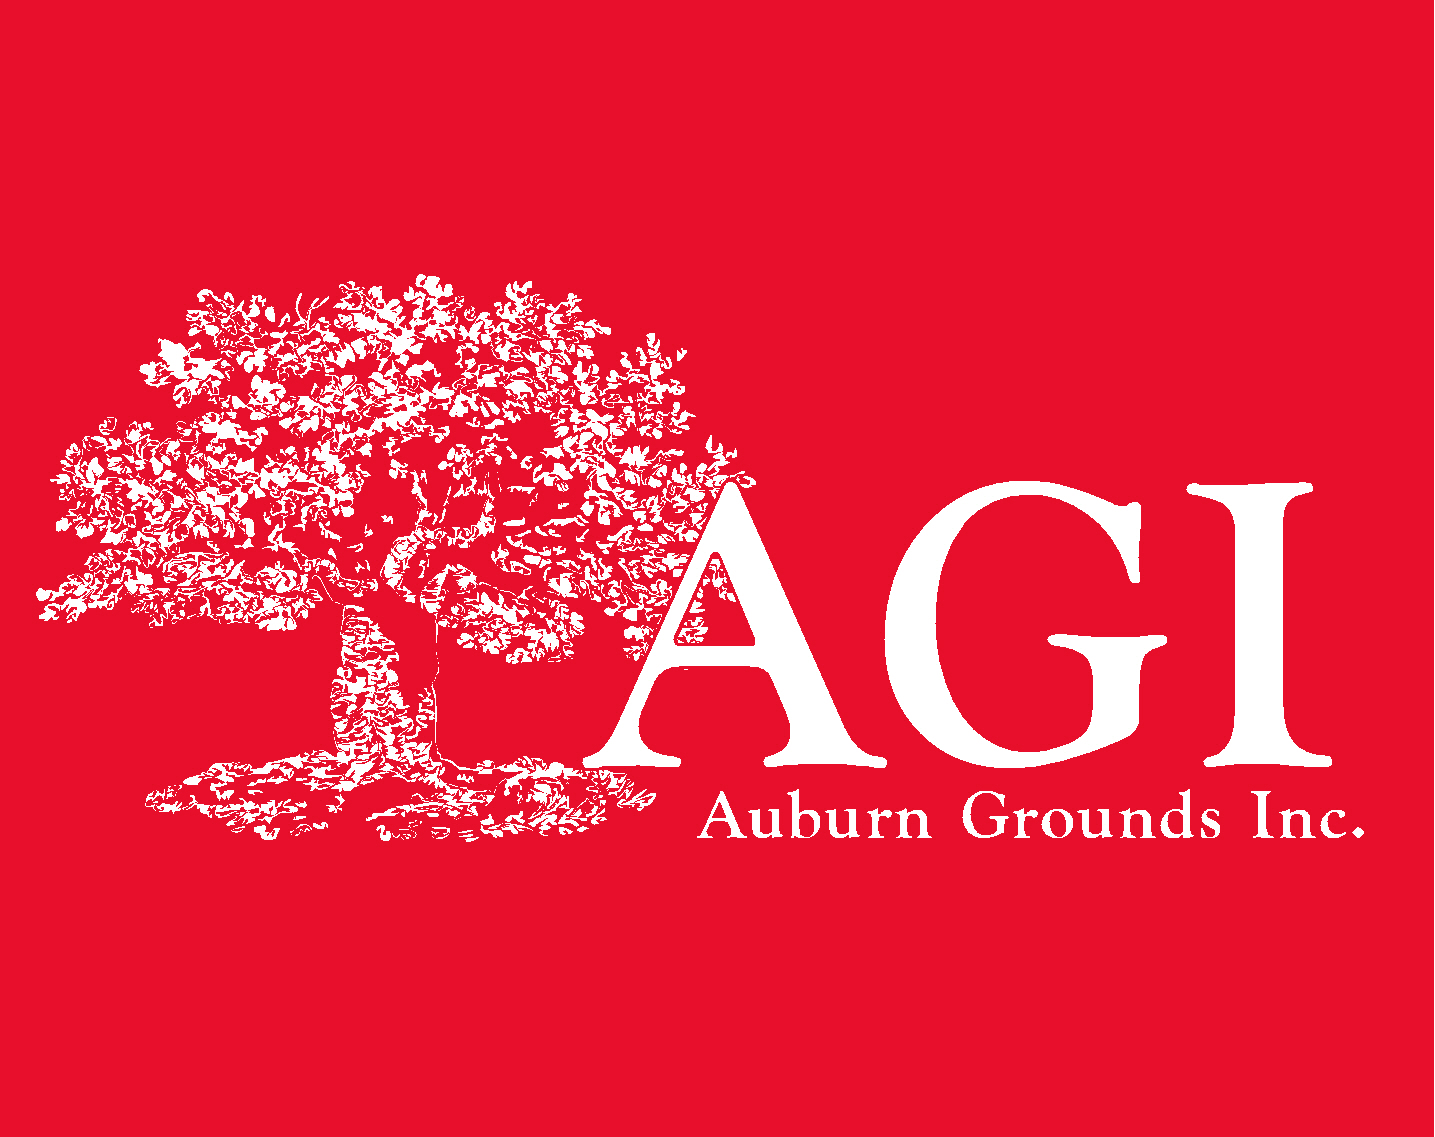 Auburn Grounds Inc